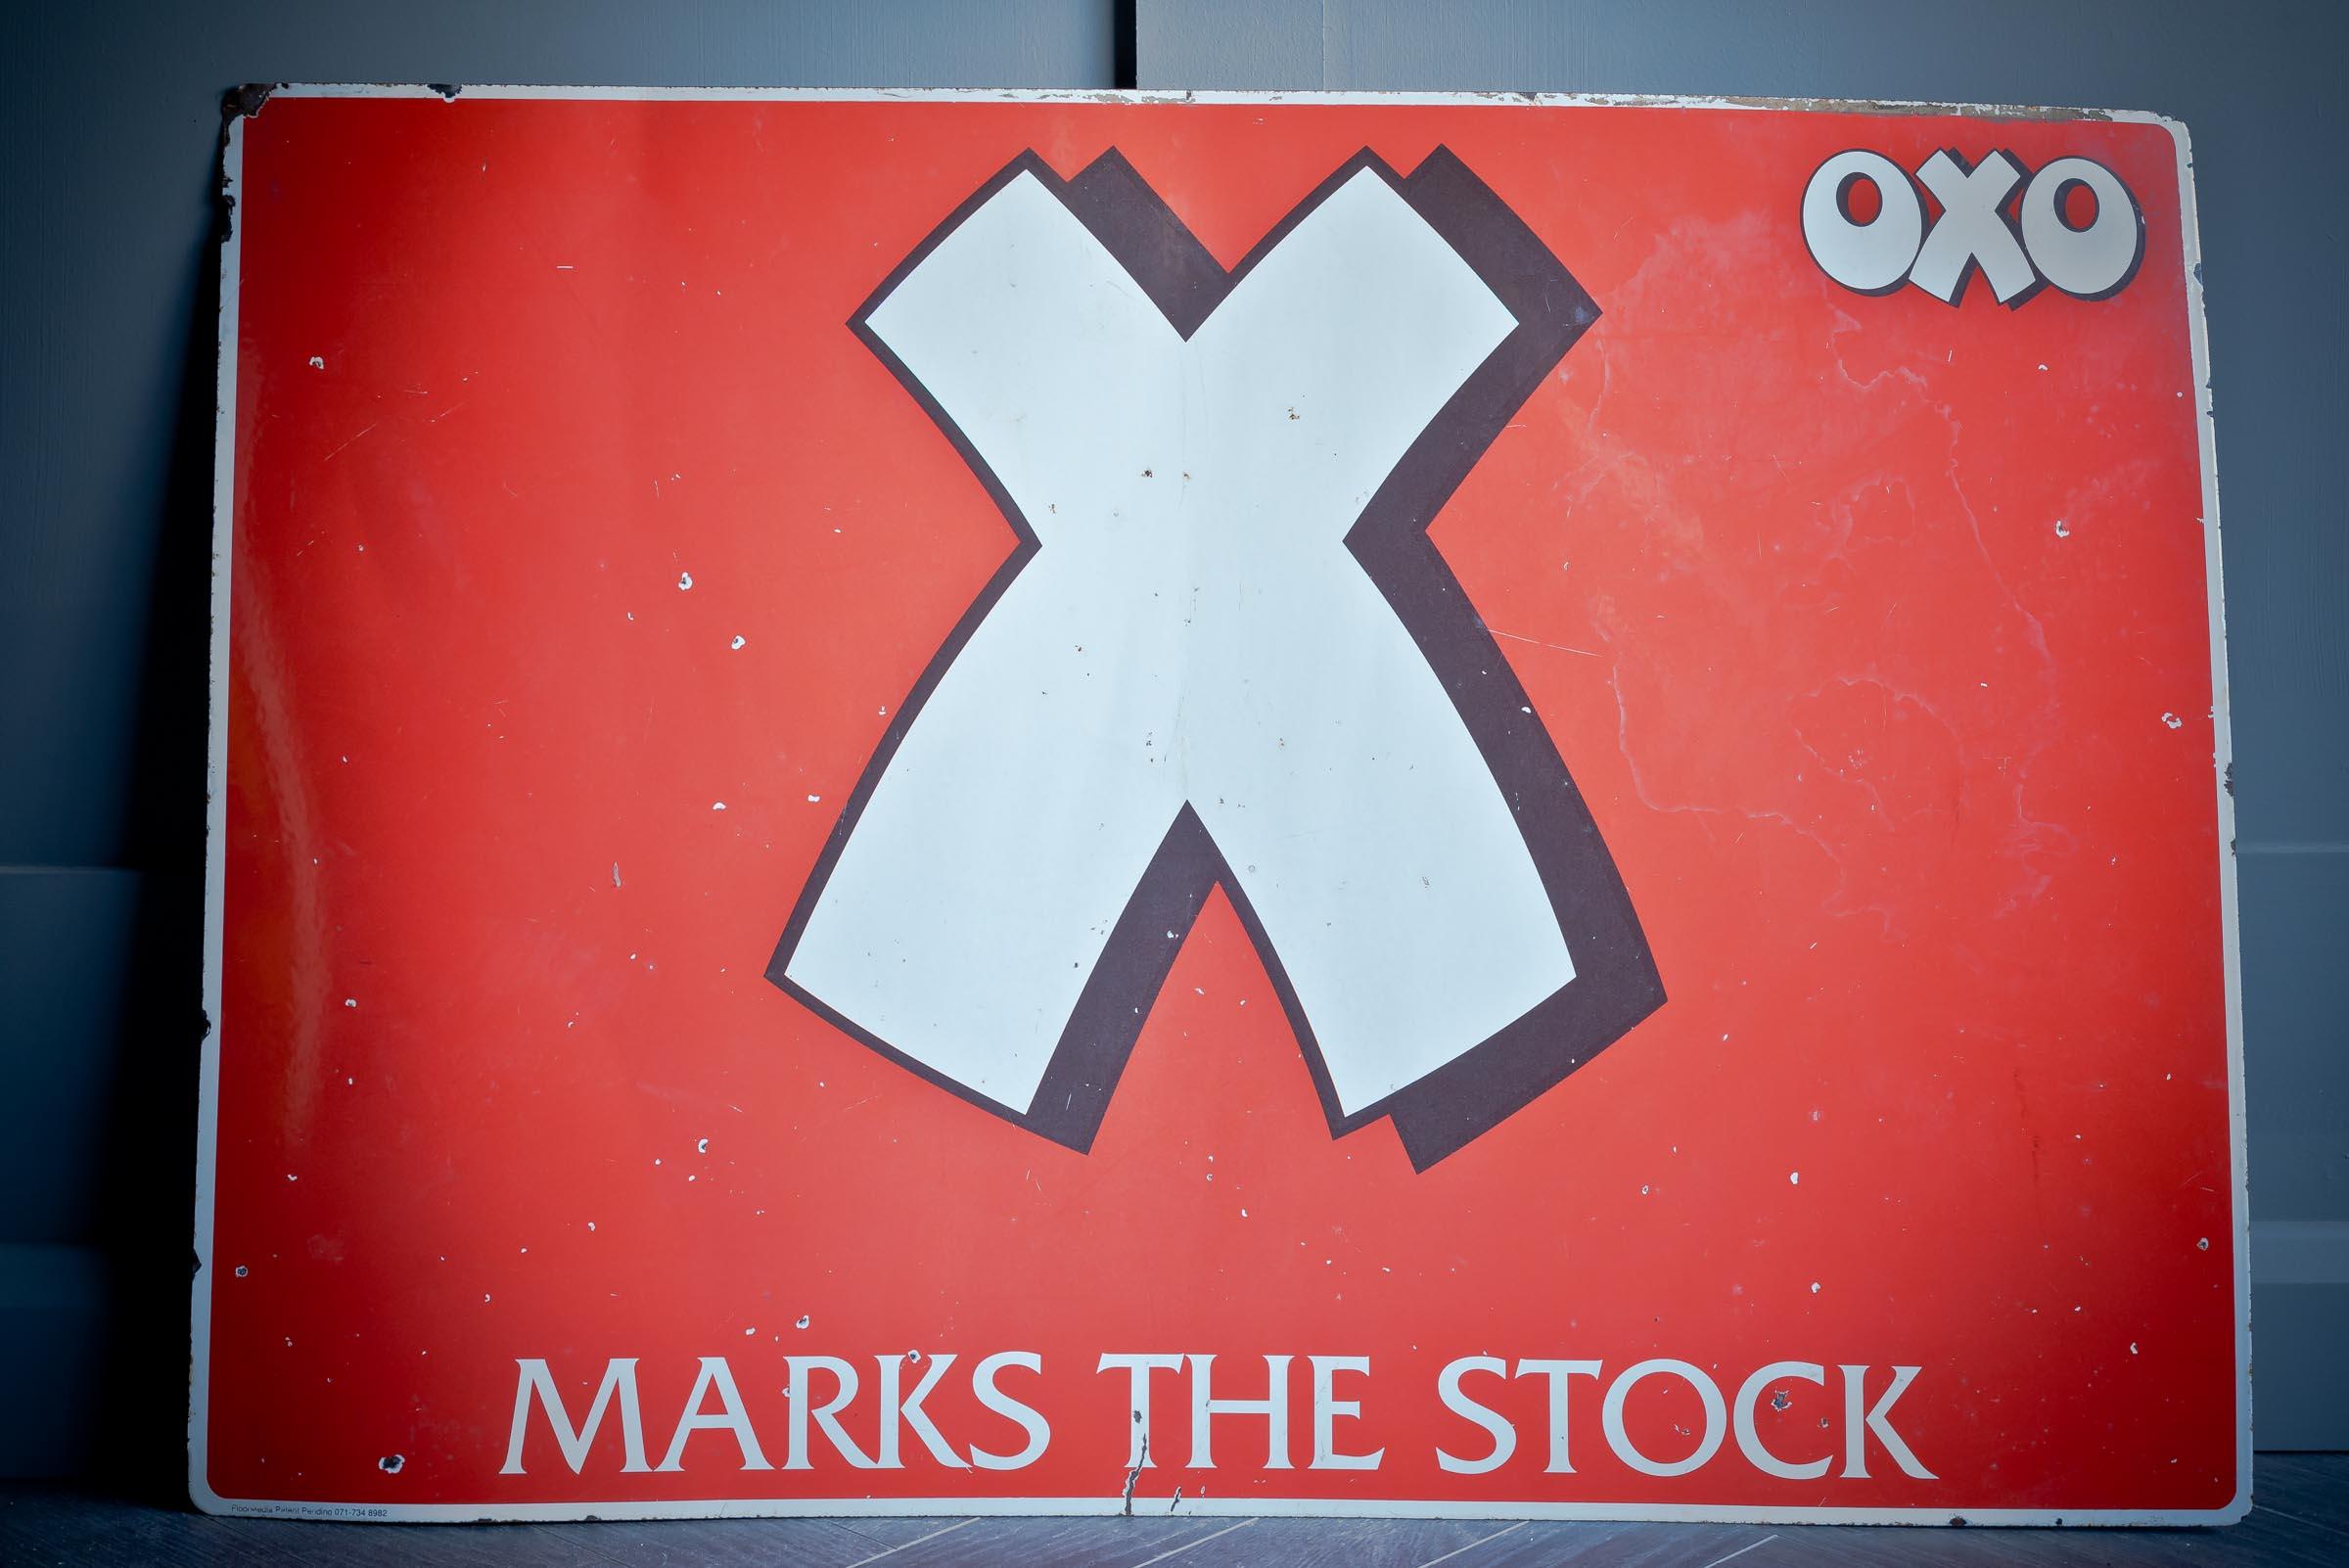 Superbe panneau publicitaire Oxo. Fond rouge vif avec un X blanc et le jeu de mots 